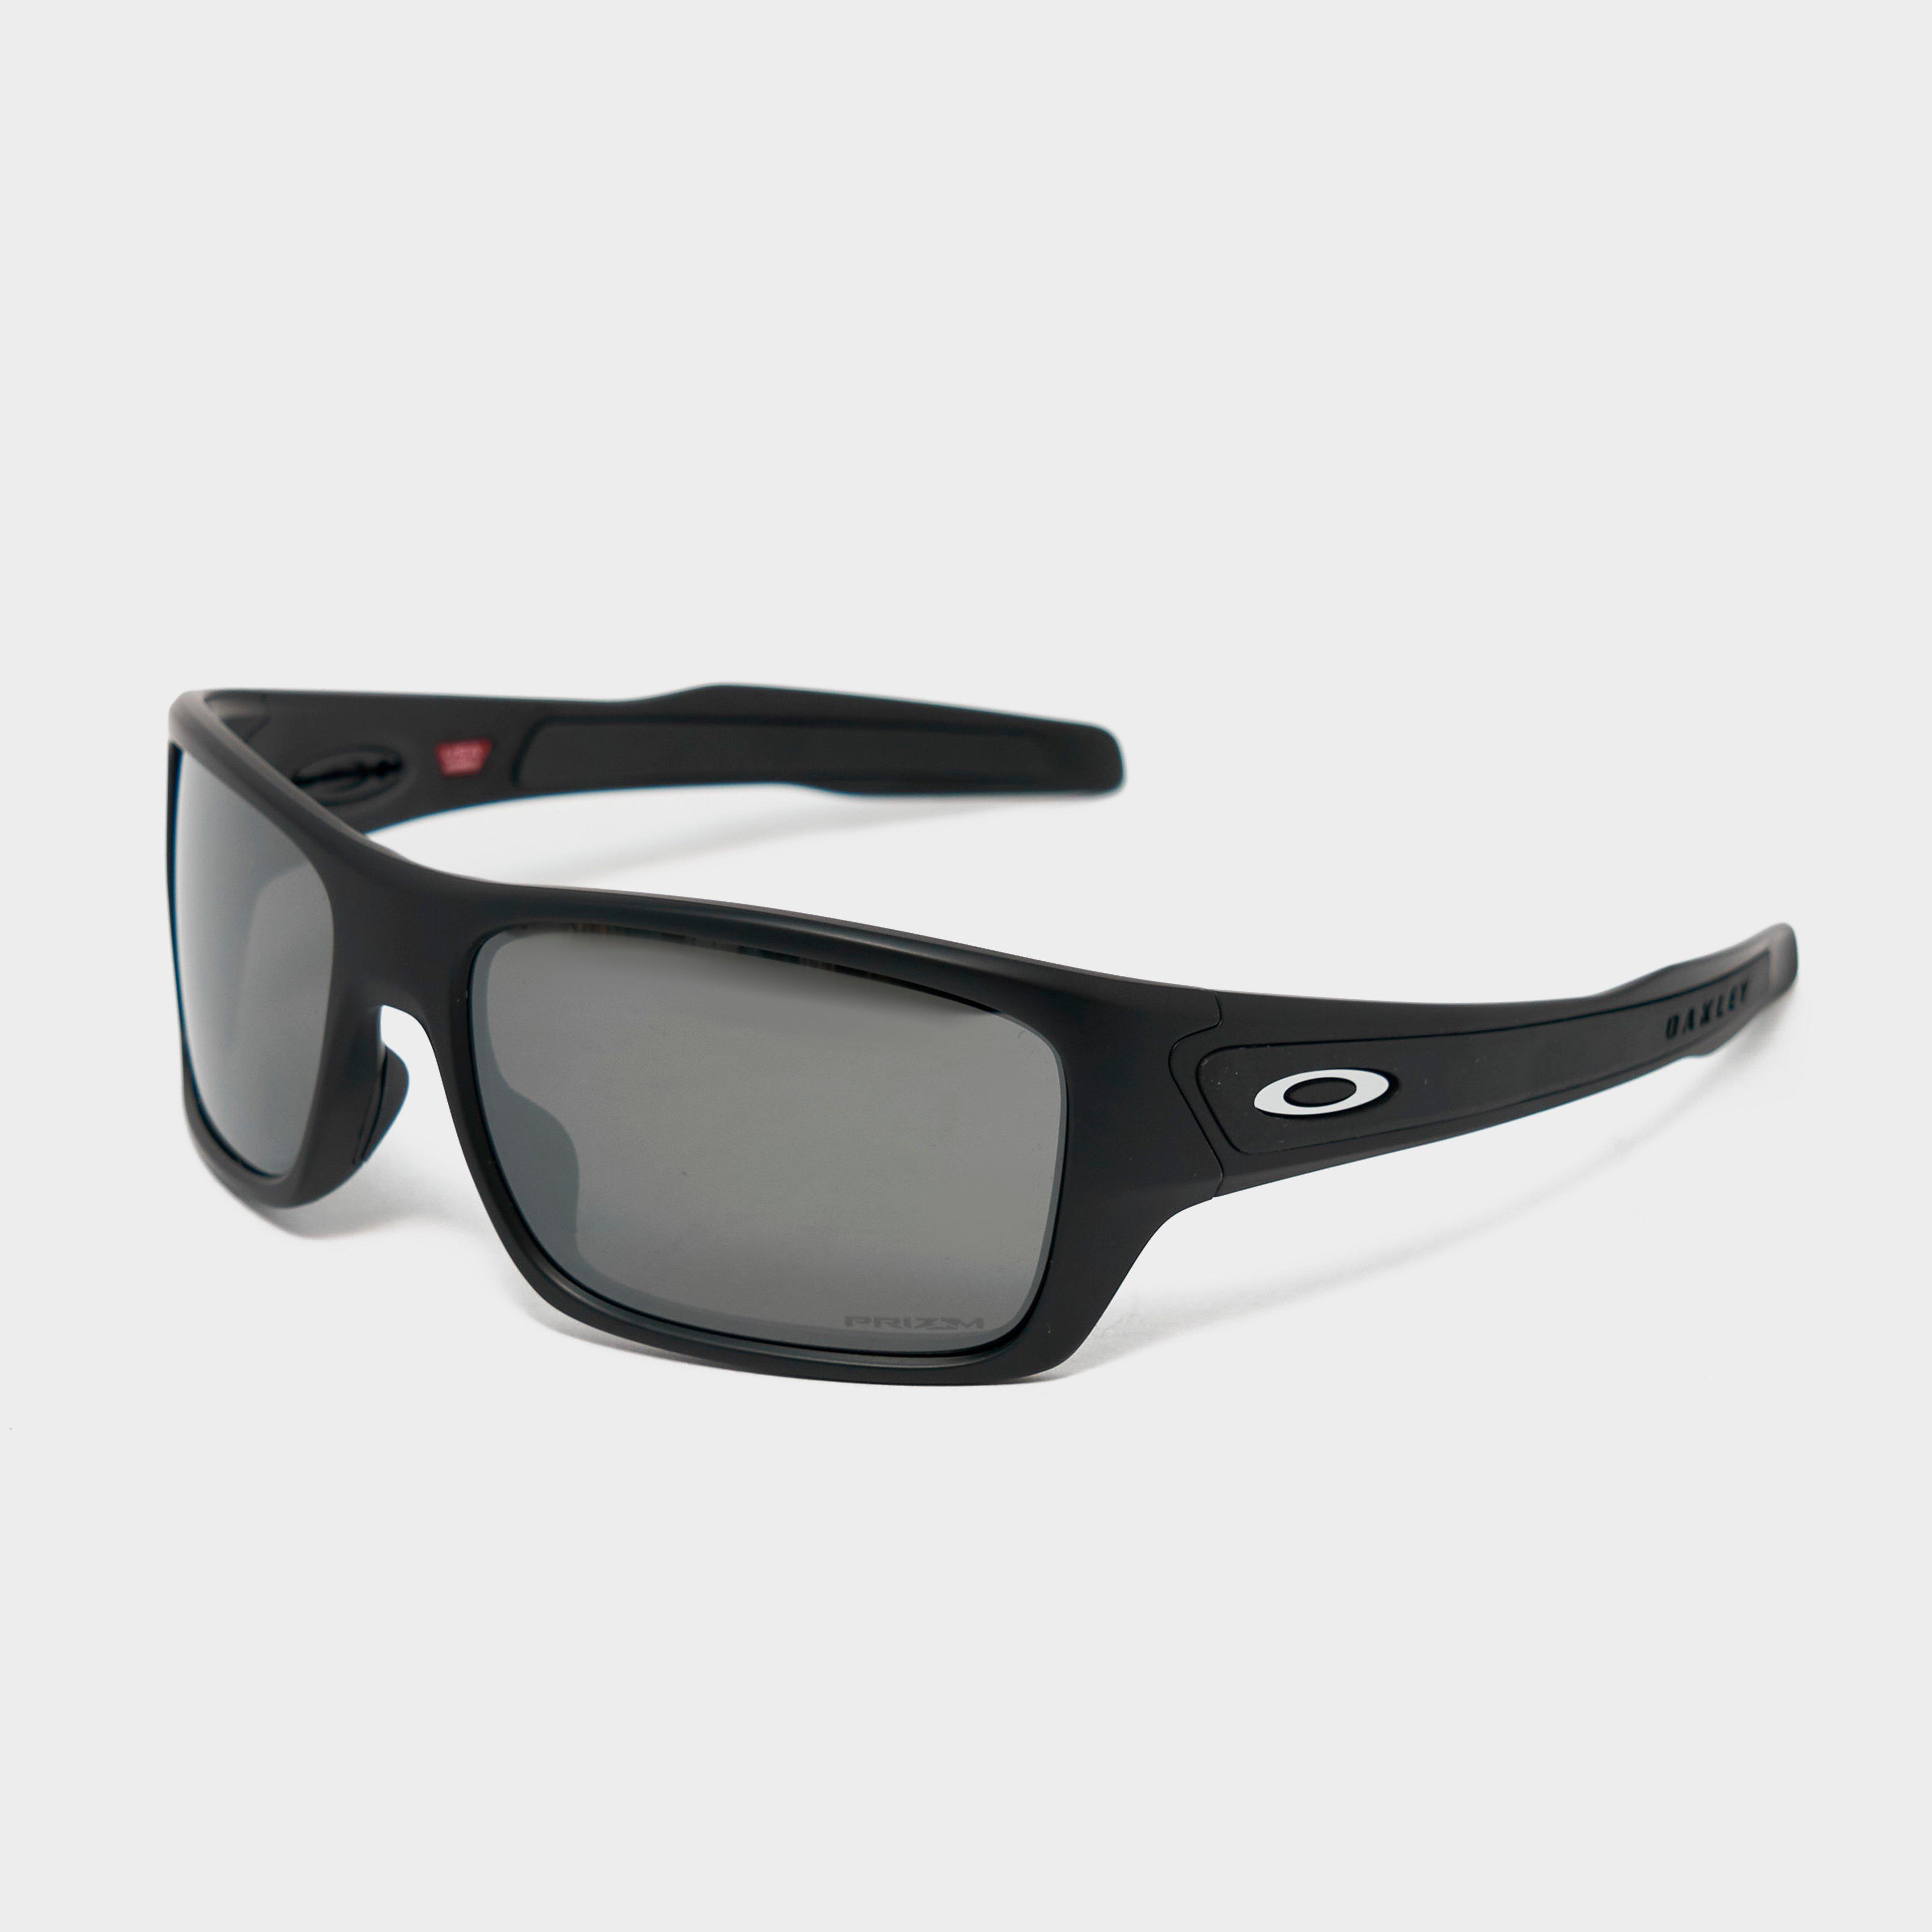  Oakley Turbine Sunglasses, Black